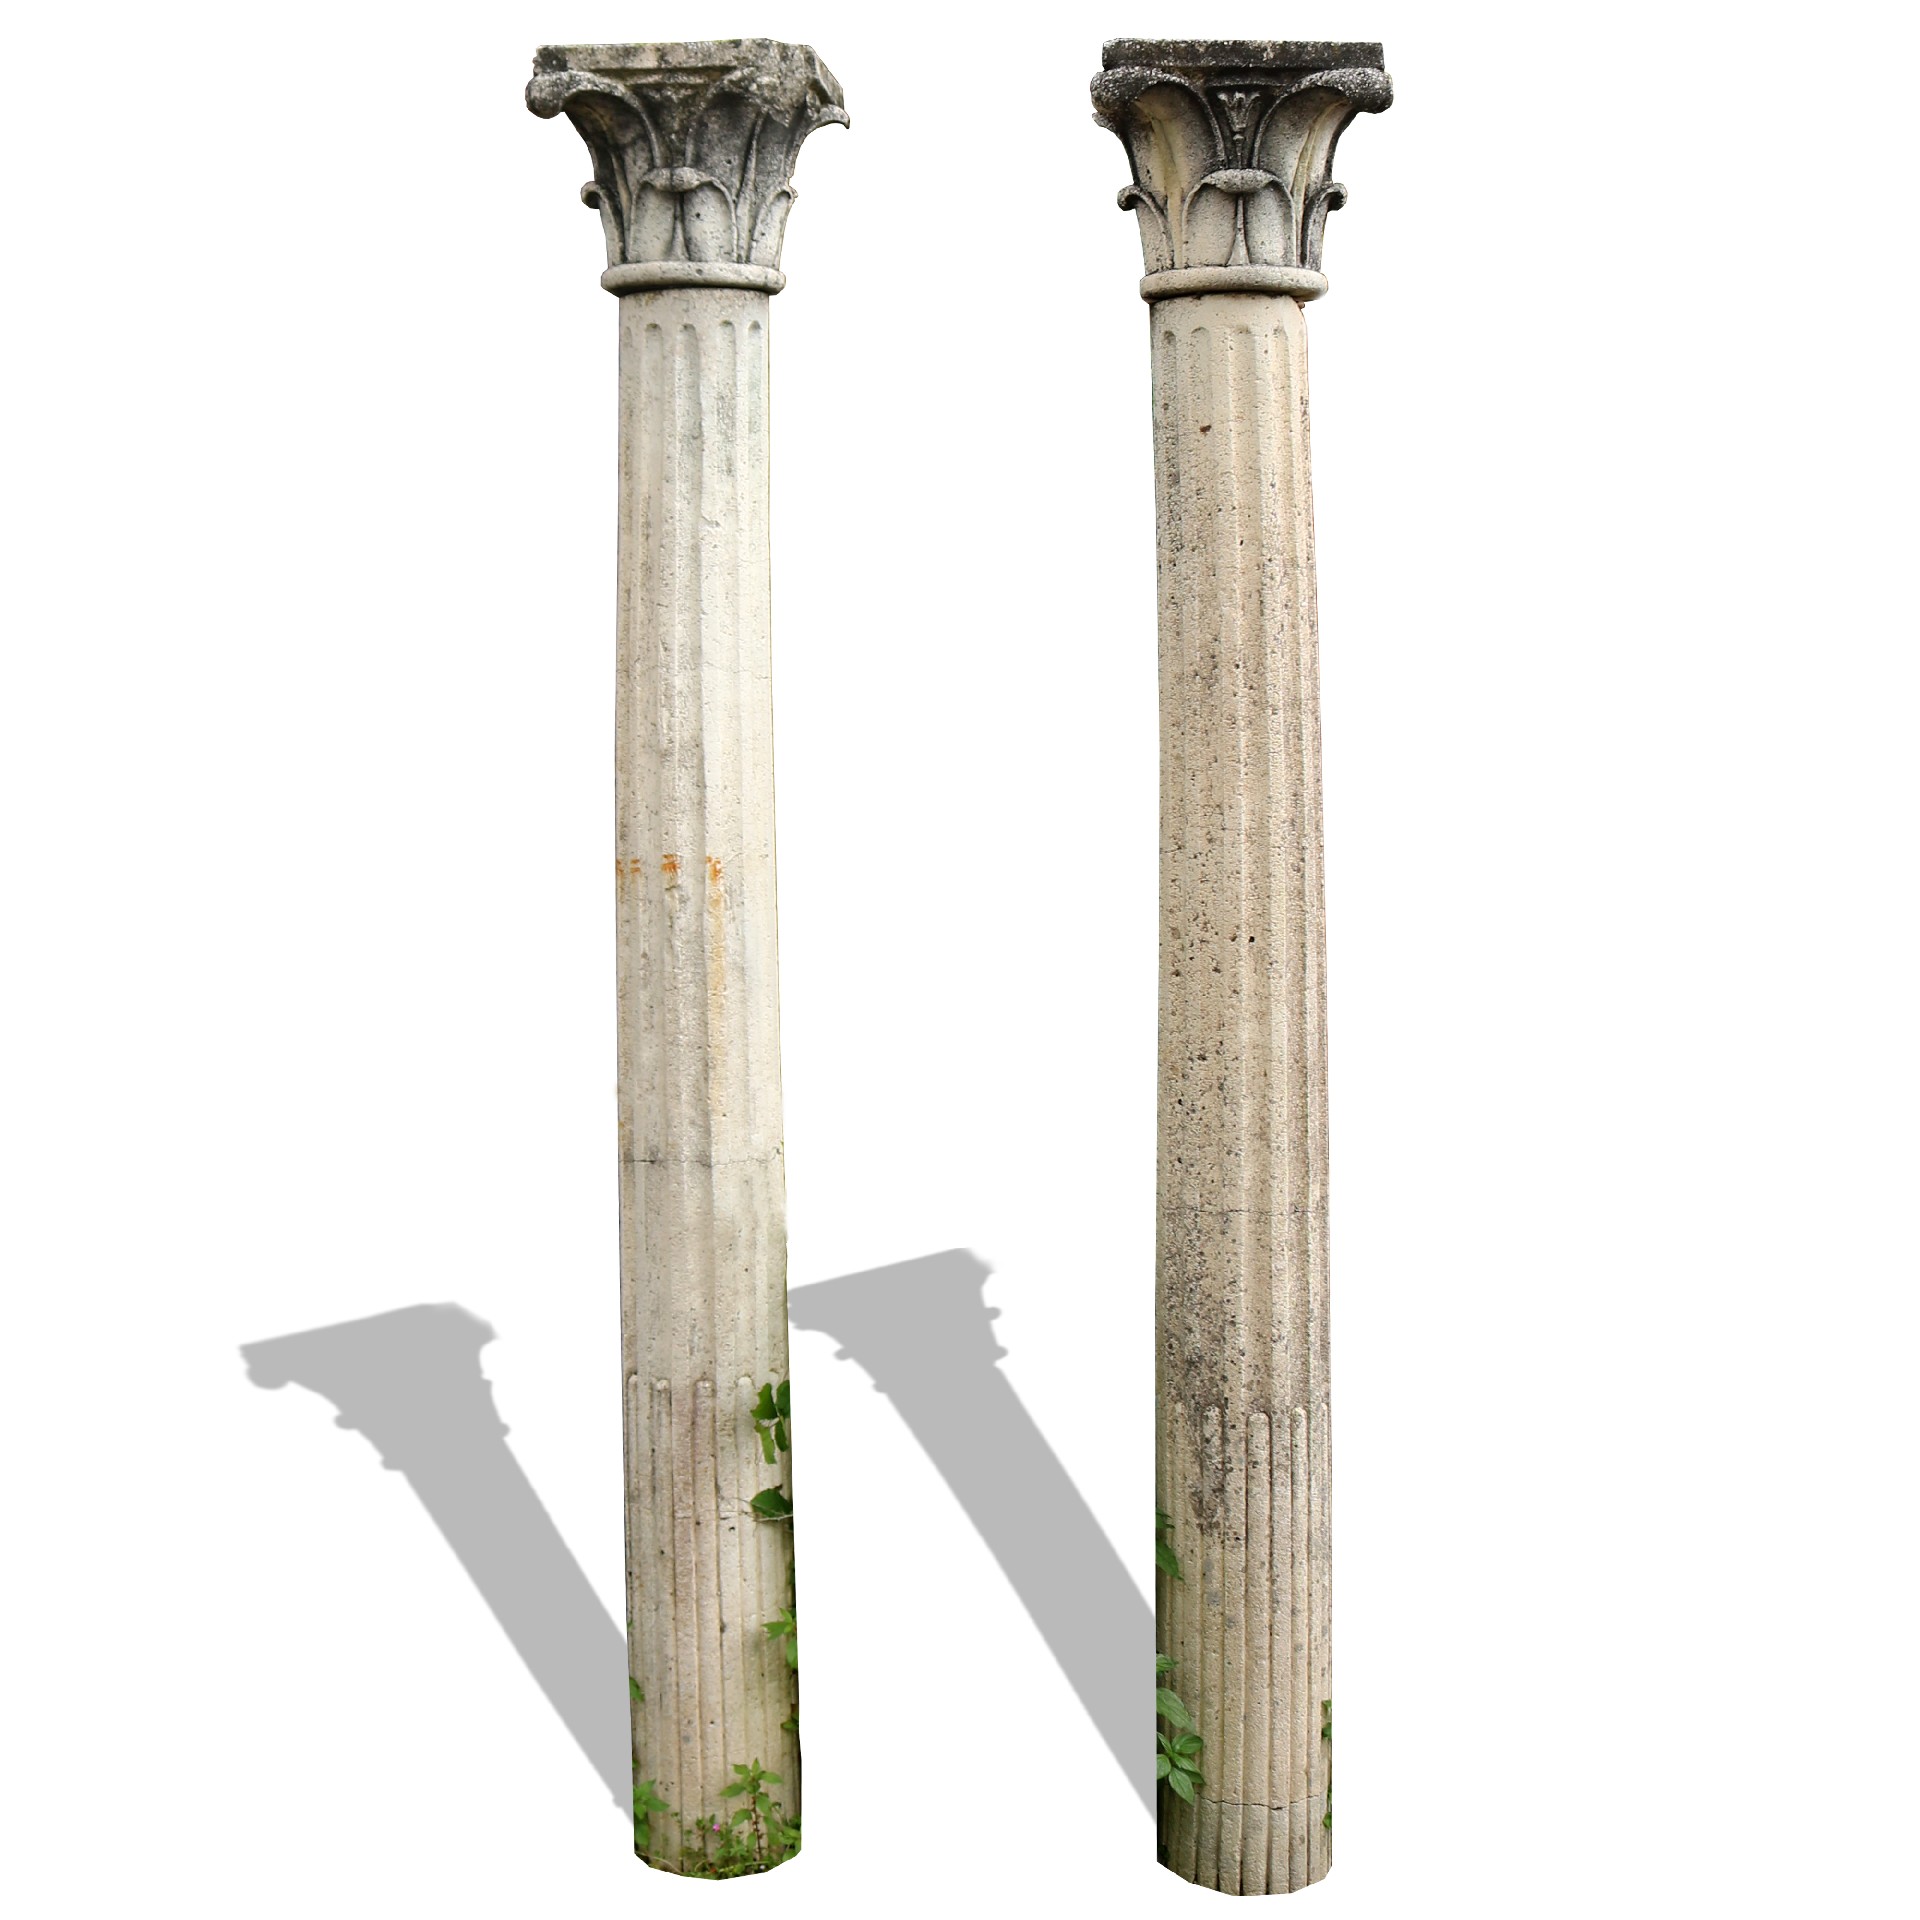 Antica coppia di colonne in impasto. - Colonne antiche - Architettura - Prodotti - Antichità Fiorillo